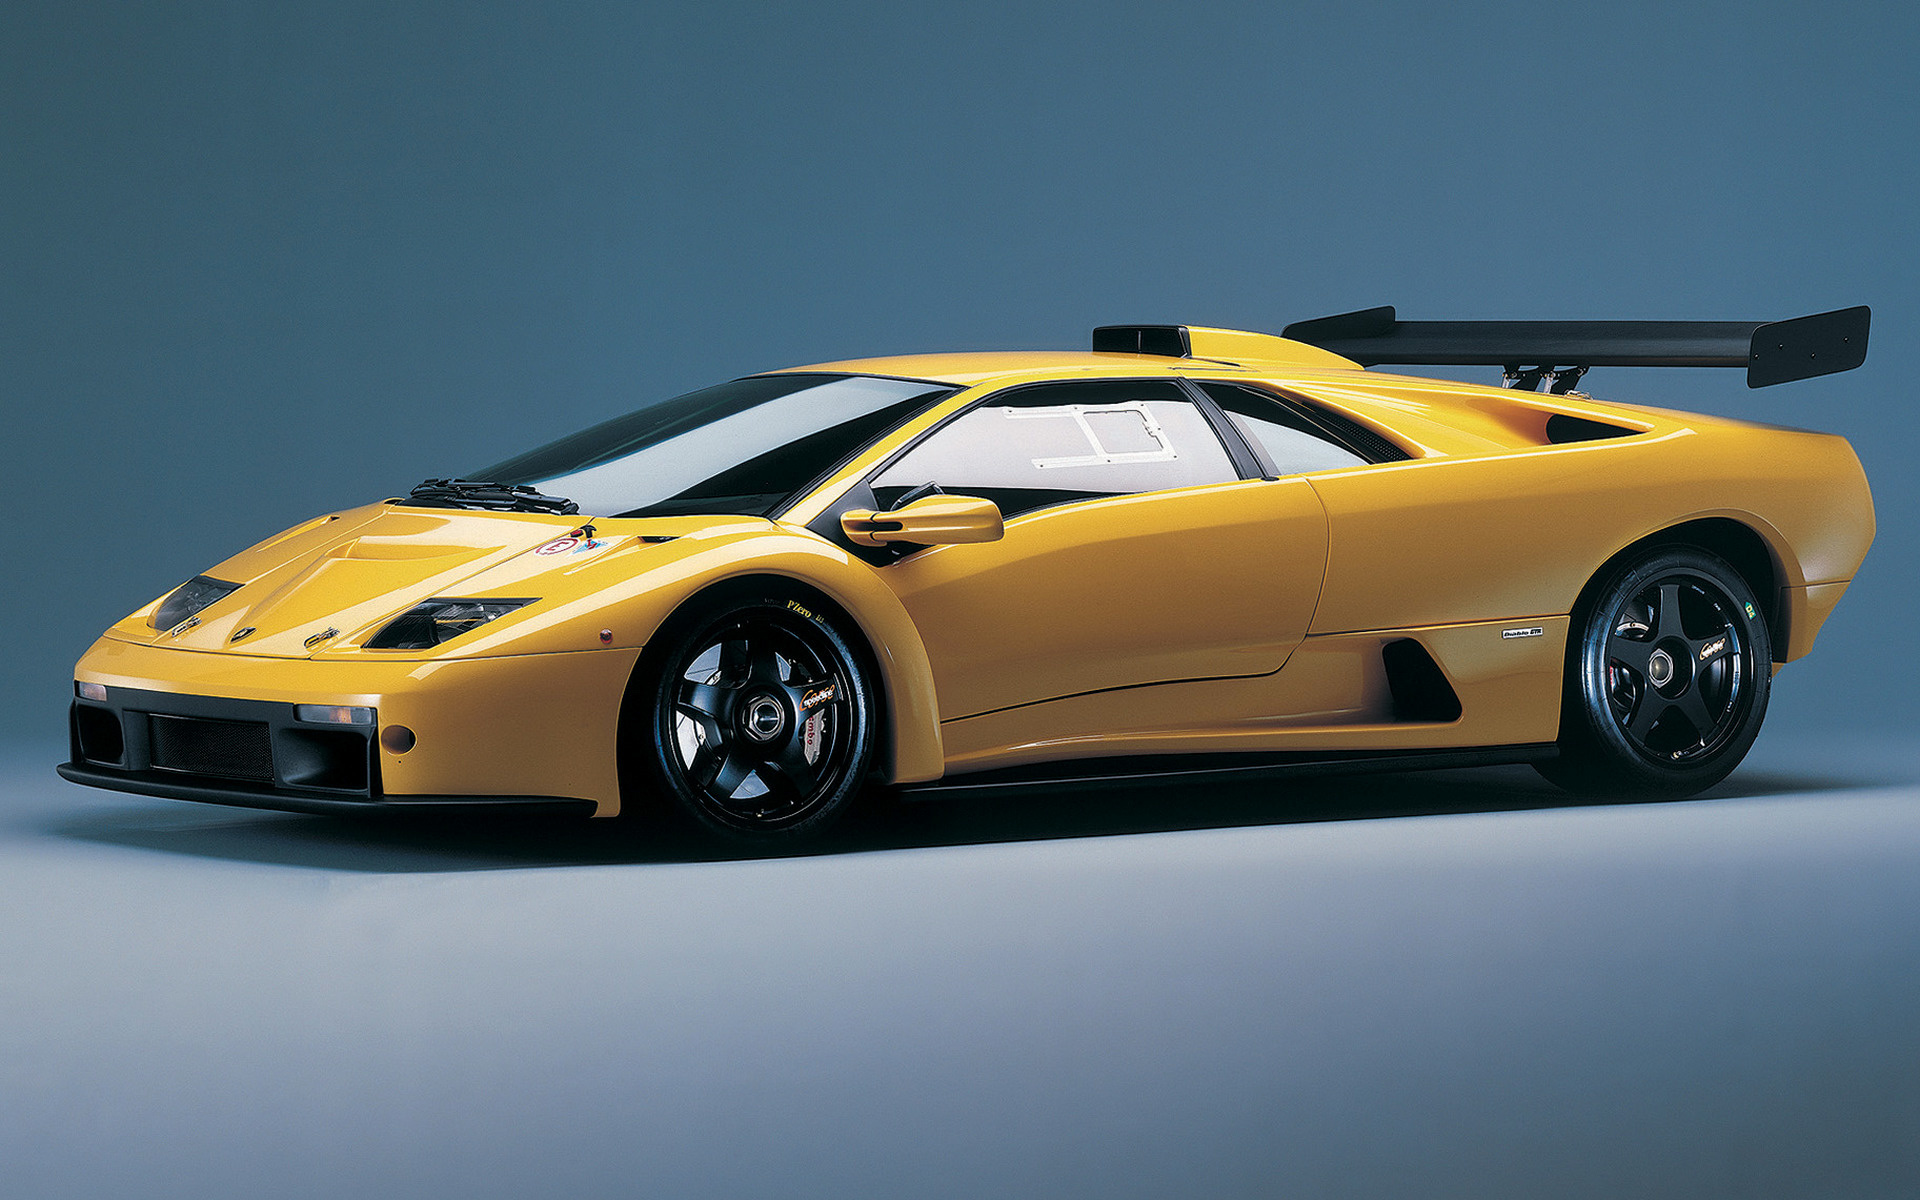 Lamborghini Diablo GTR (2000) Wallpapers and HD Images ...